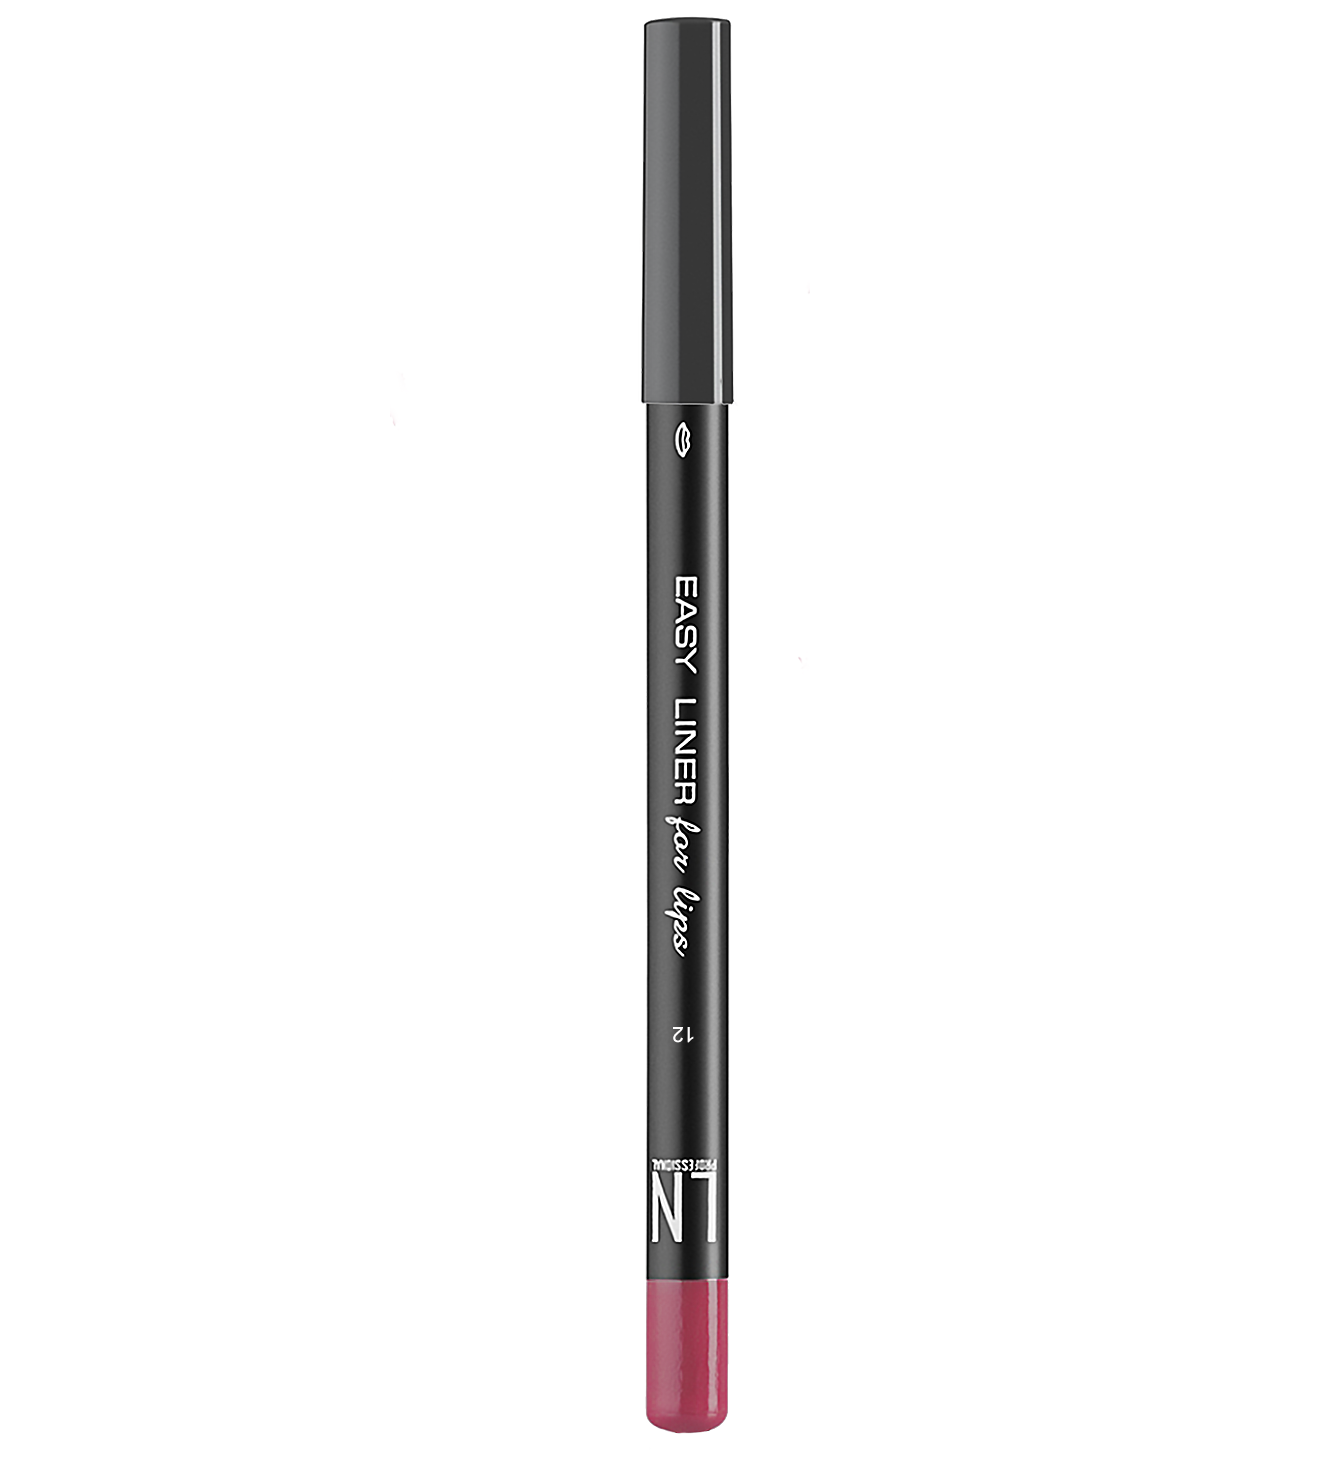 Олівець для губ LN Professional Easy Liner for Lips, відтінок 12, 1,7 г - фото 1